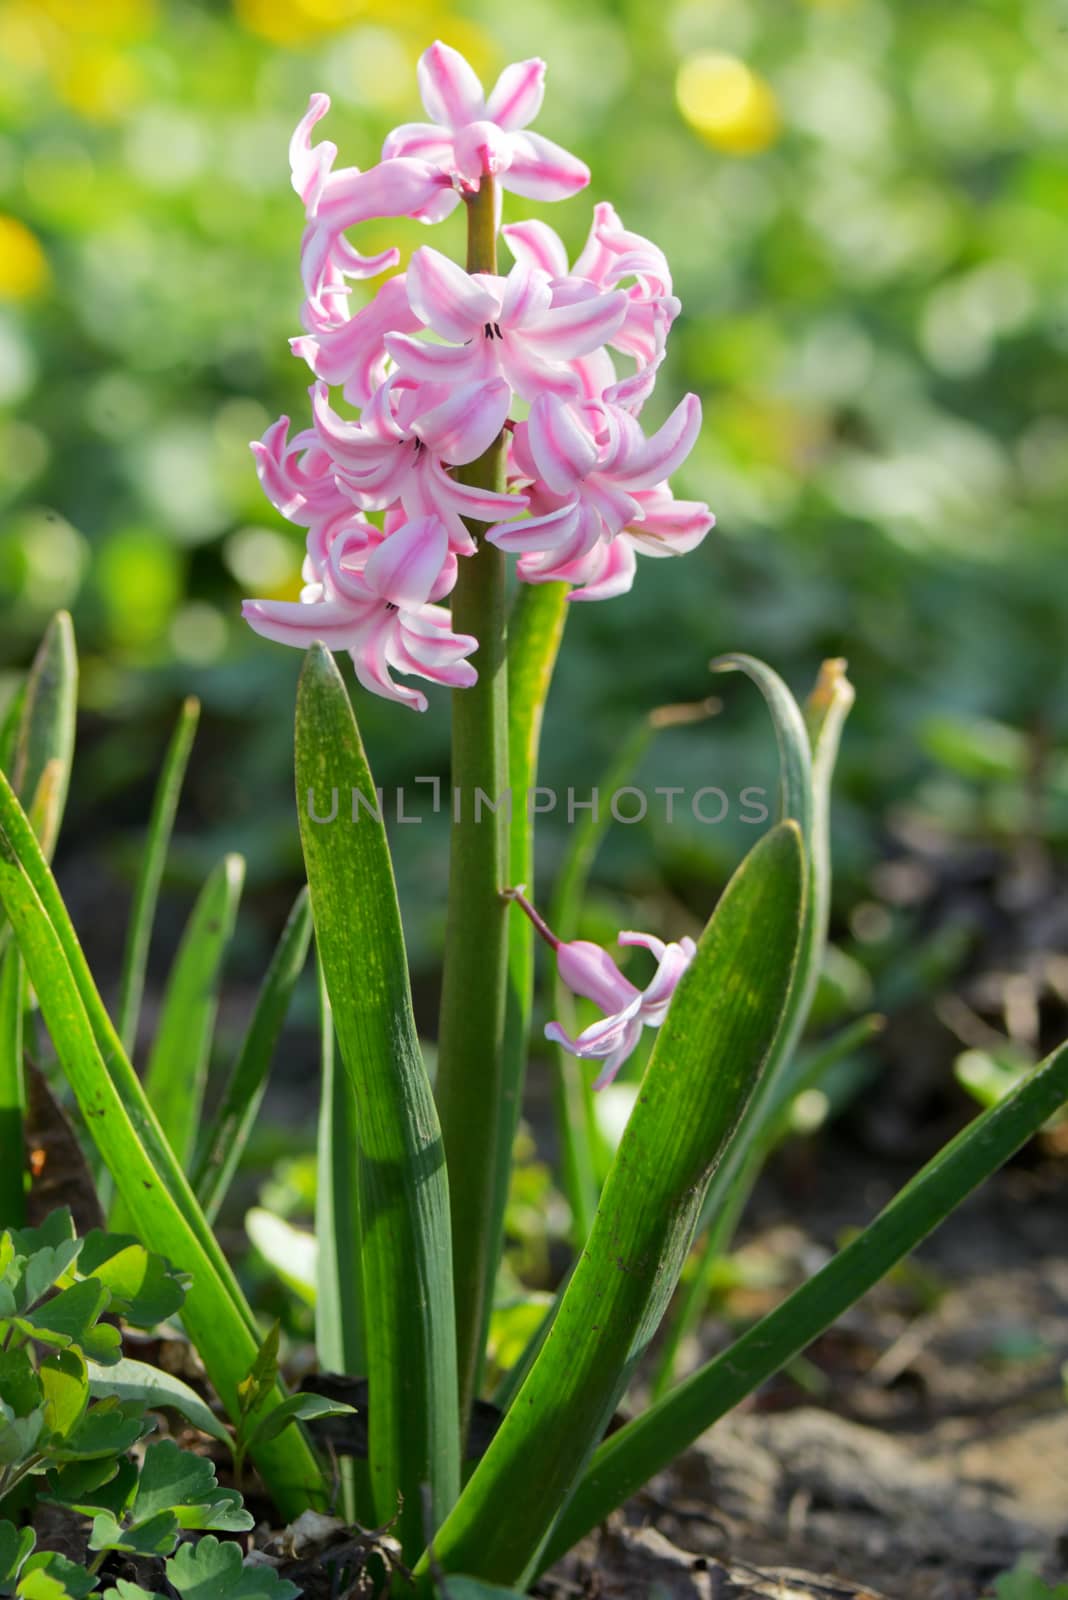 Pink hyacinth flower in spring garden